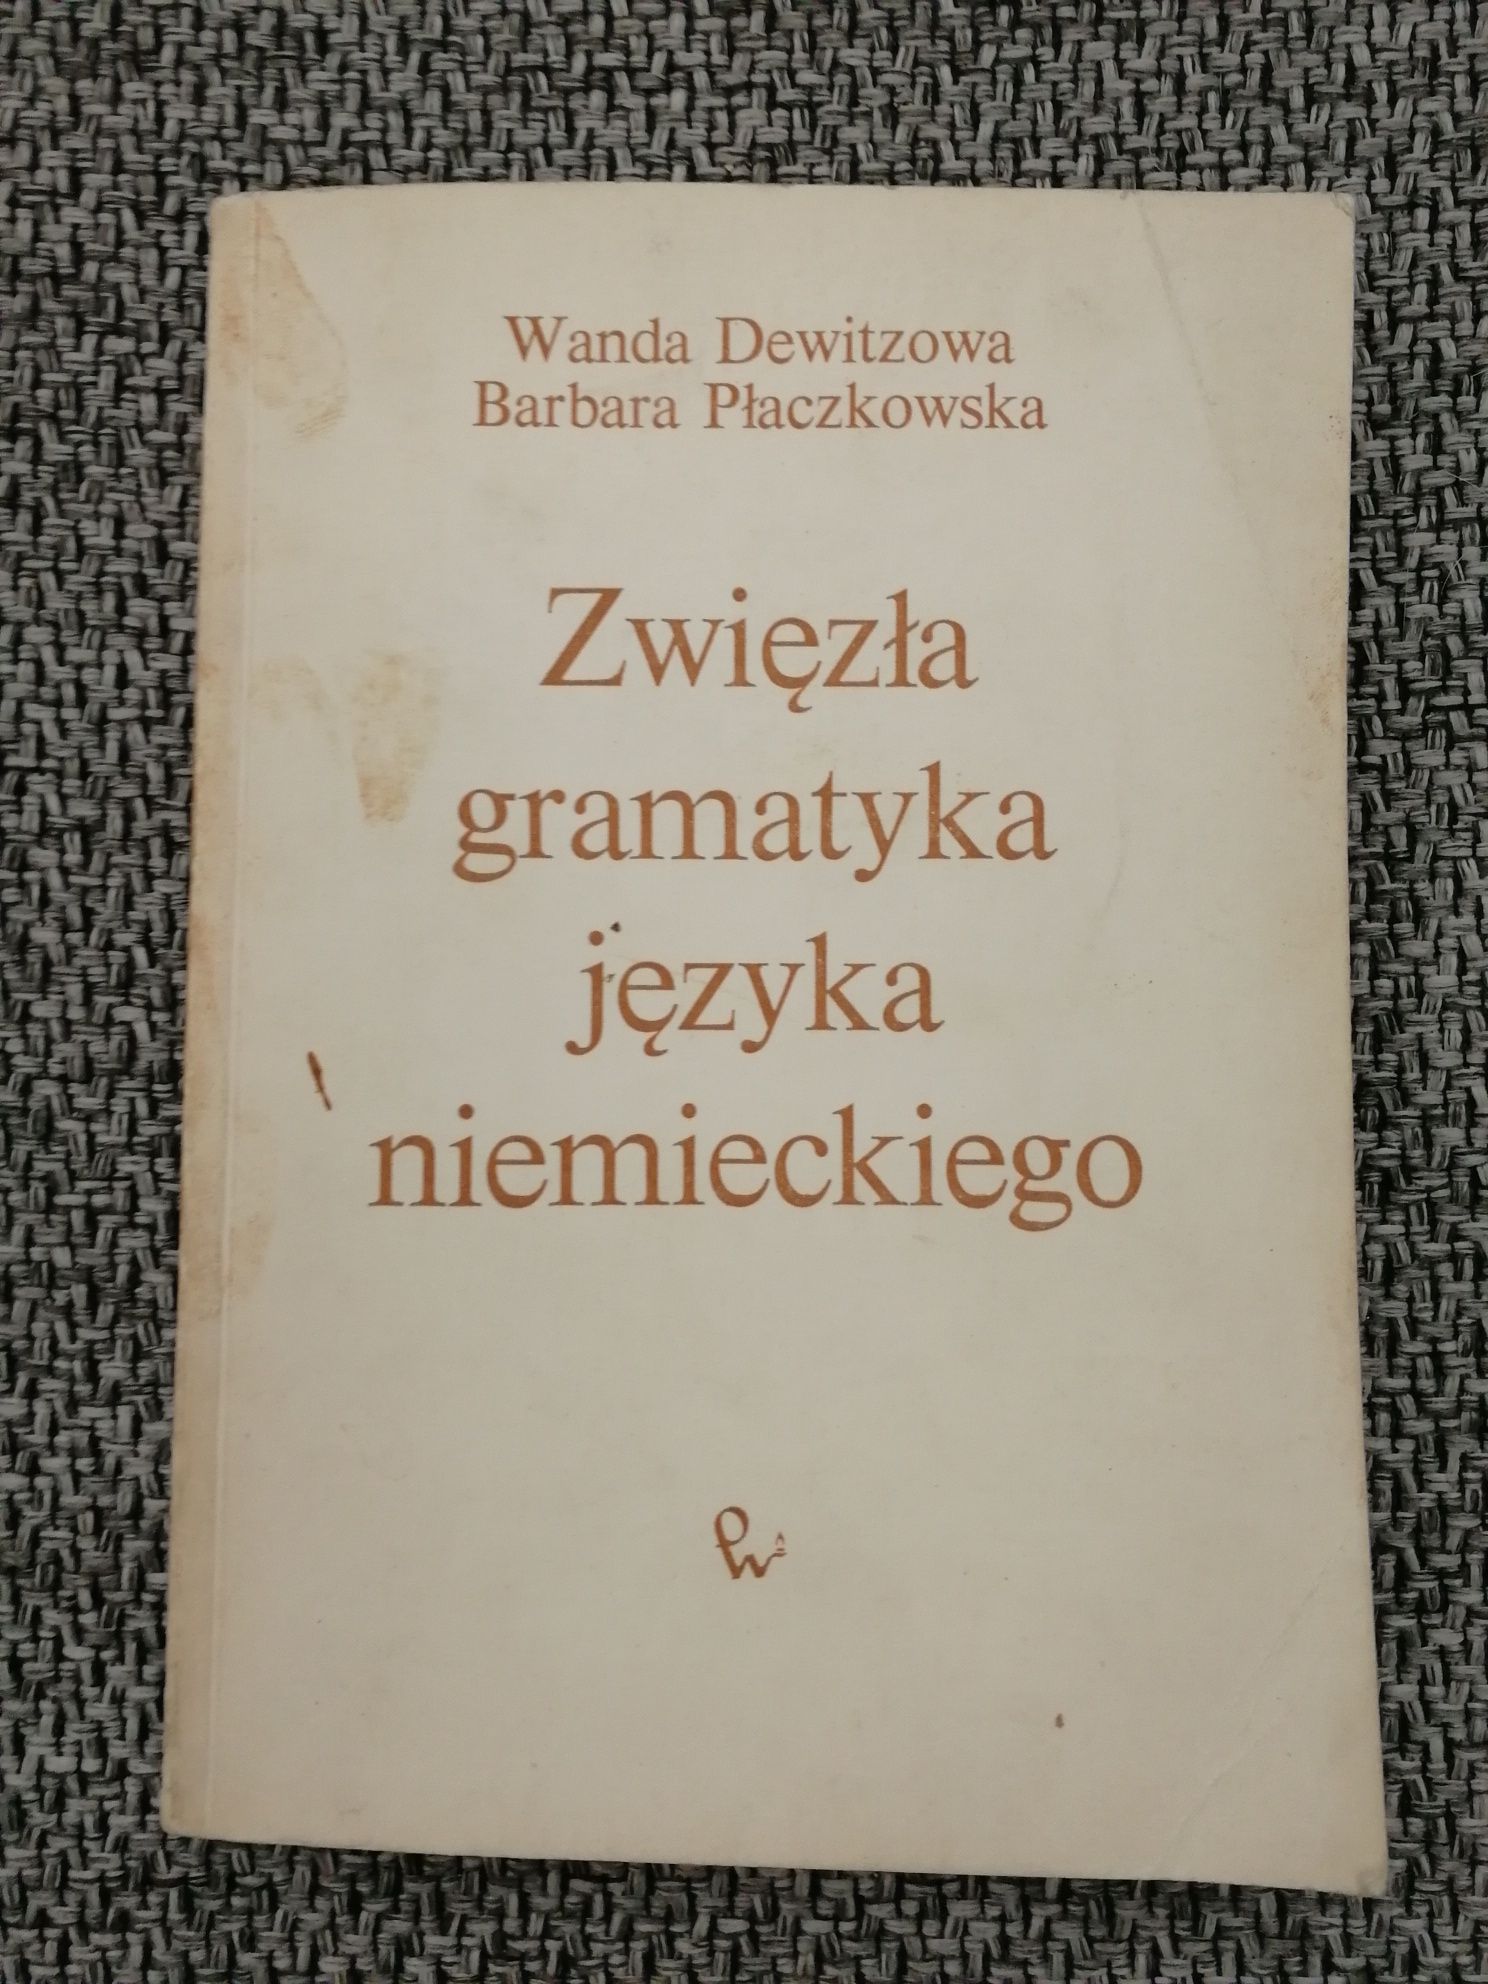 Zwięzła gramatyka języka niemieckiego Dewitzowa Płaczkowska